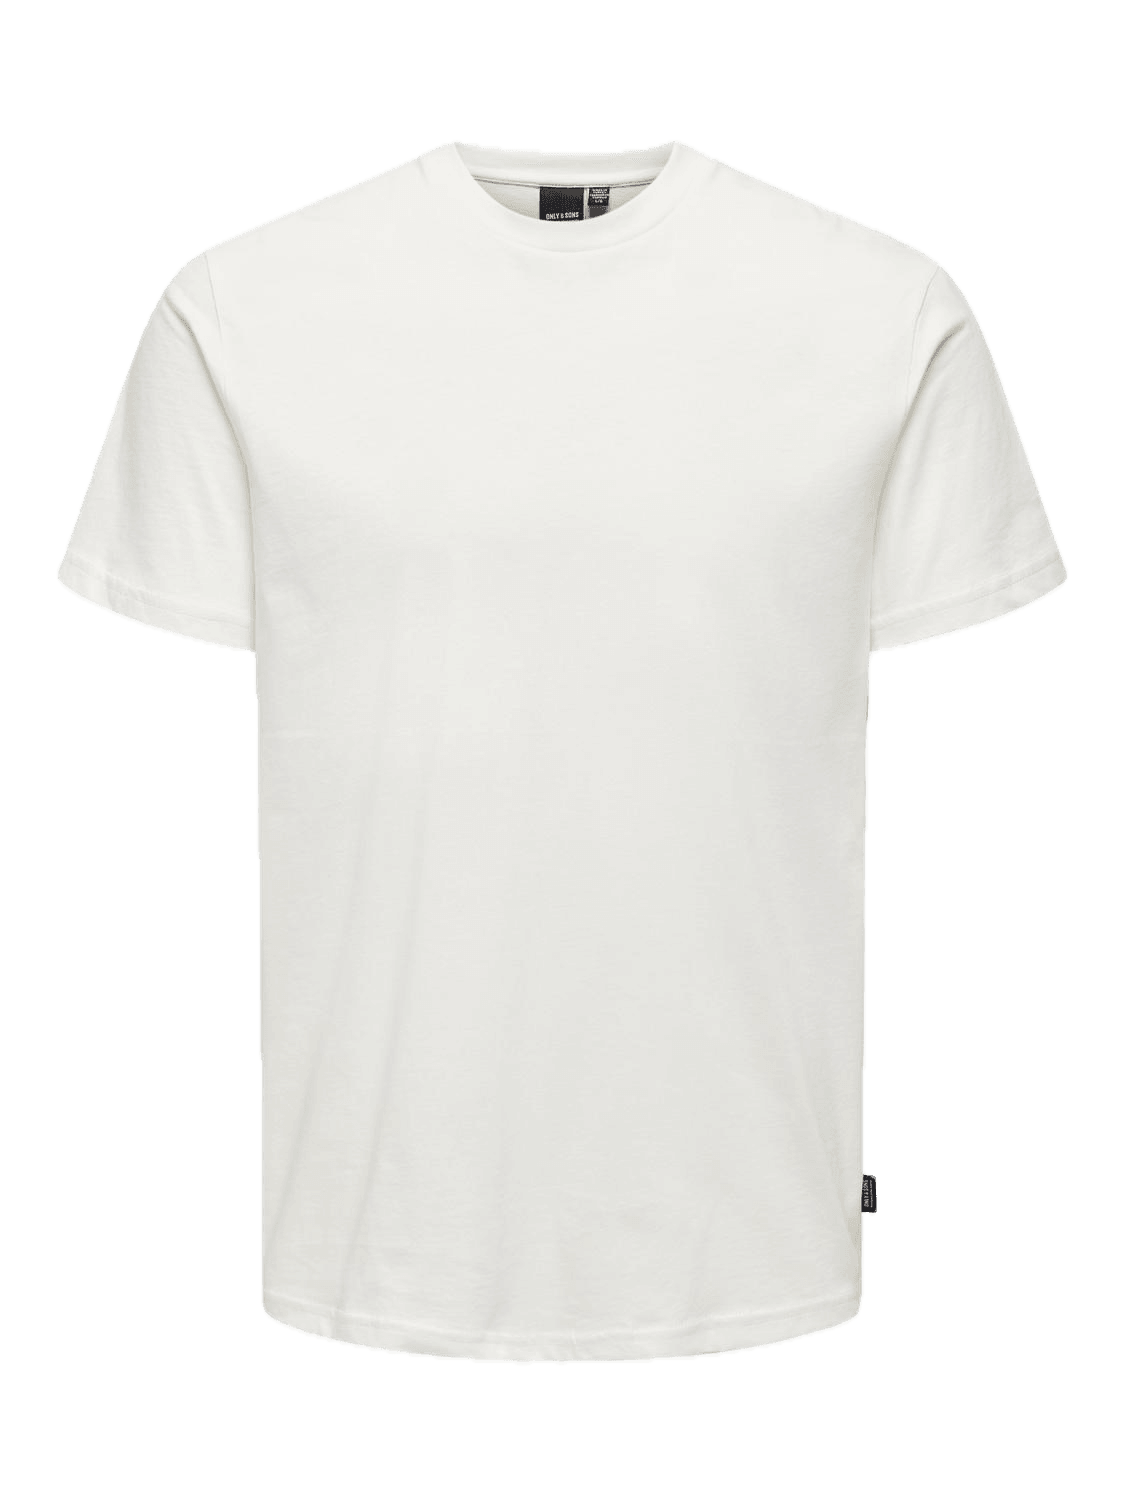 Camiseta Only & Sons Motob Life White - ECRU